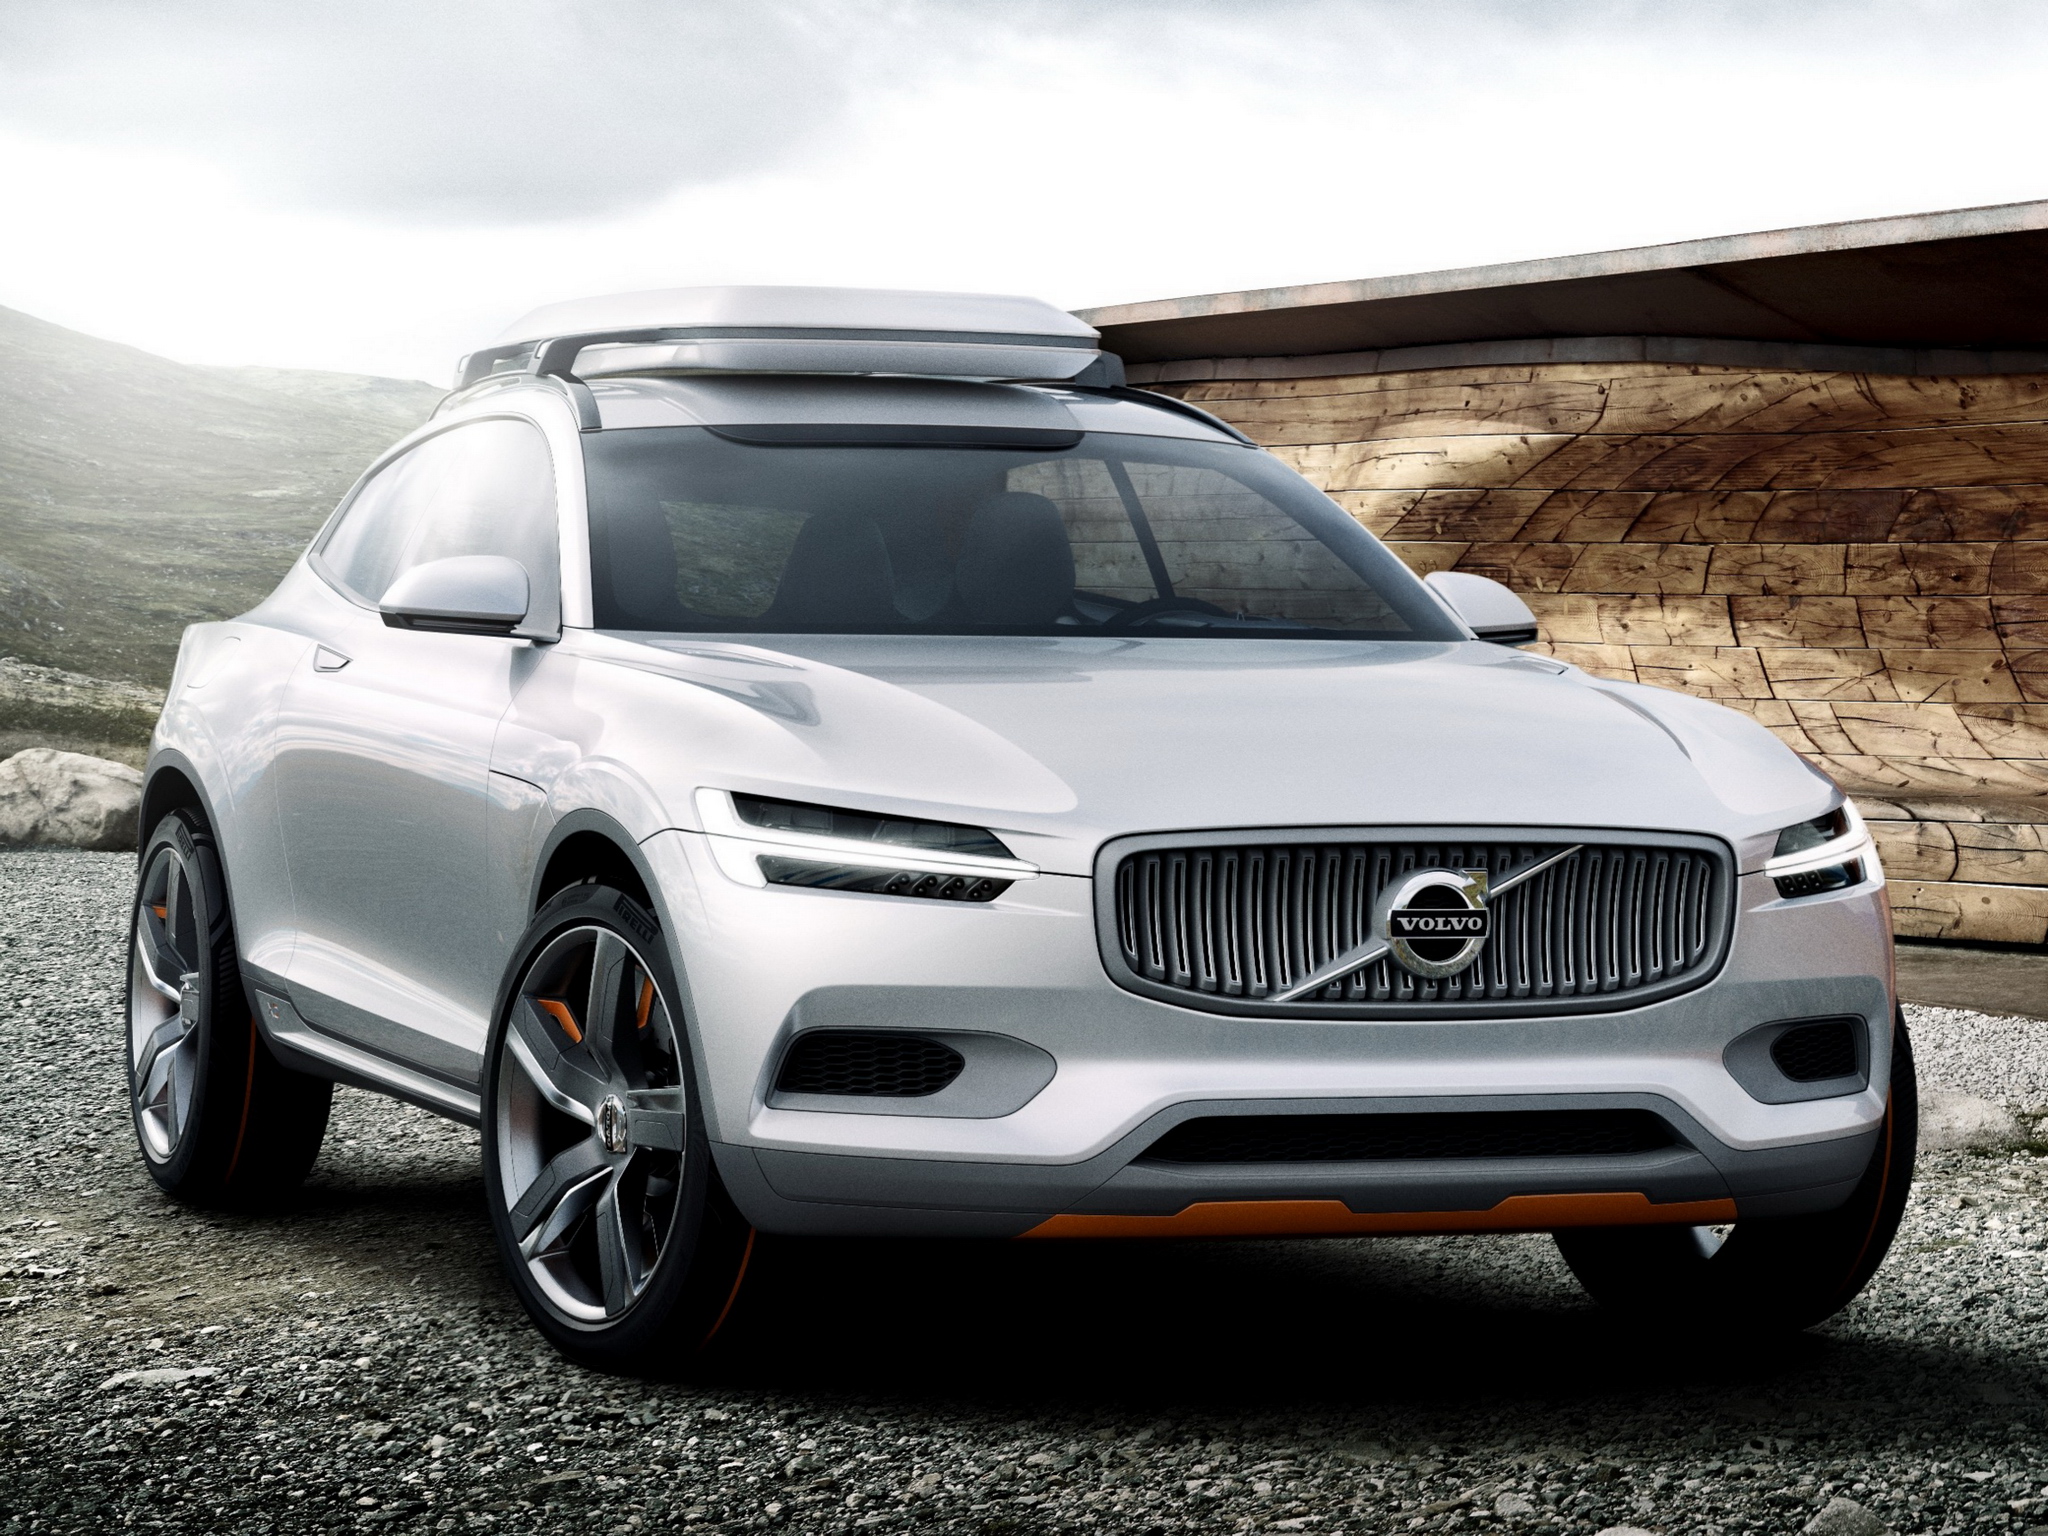 2014, Volvo, Concept, X c, Coupe Wallpaper